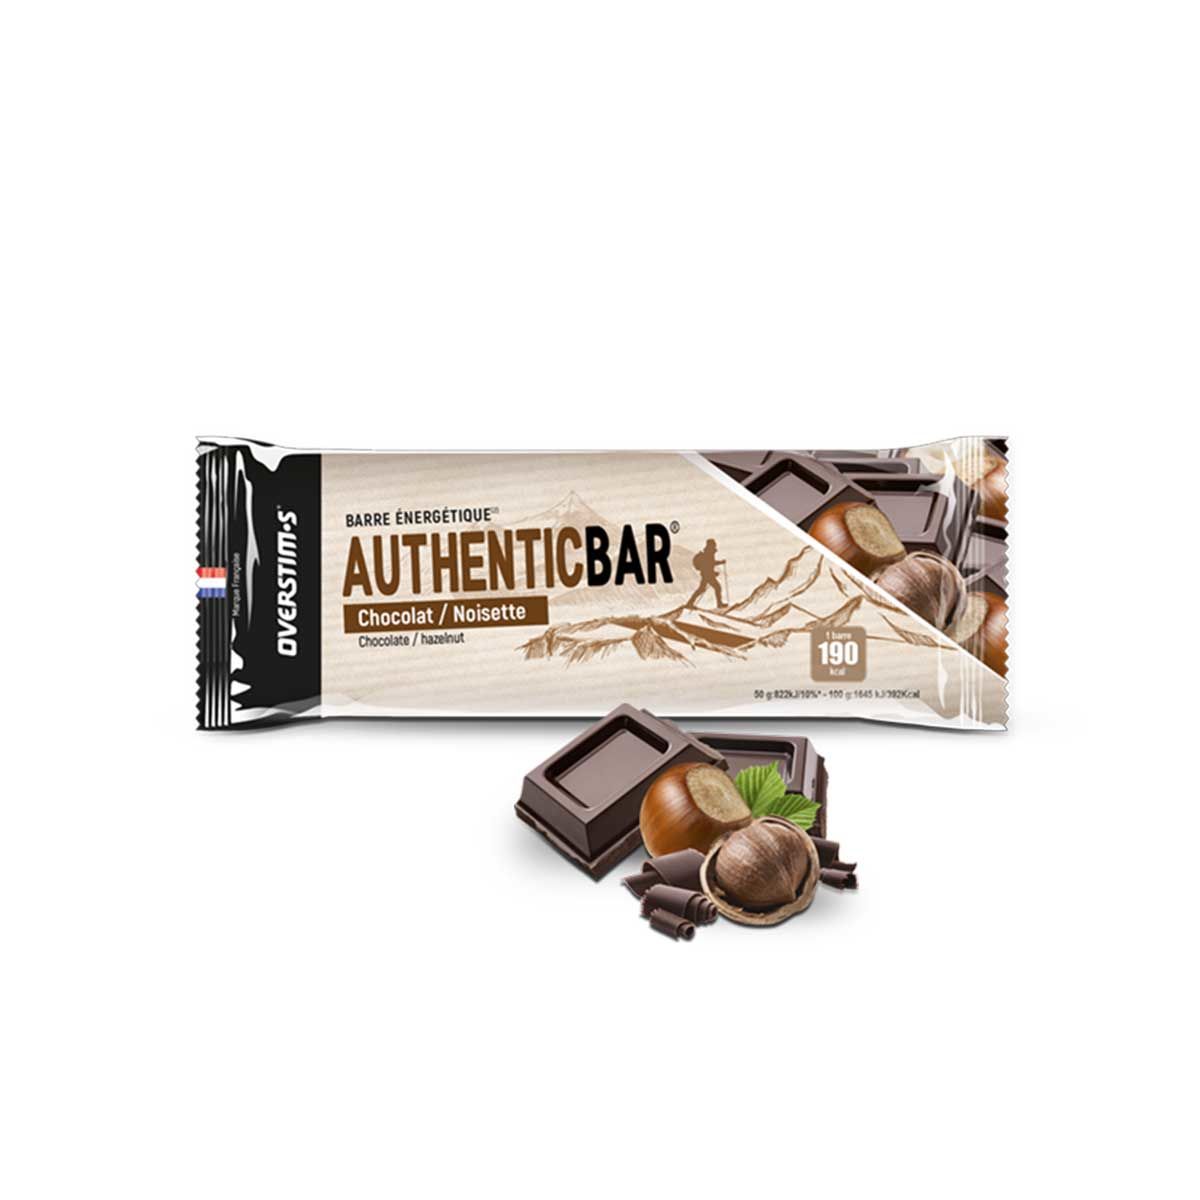 Barre énergétique Overstims Origin'bar Chocolat noir - Amandes